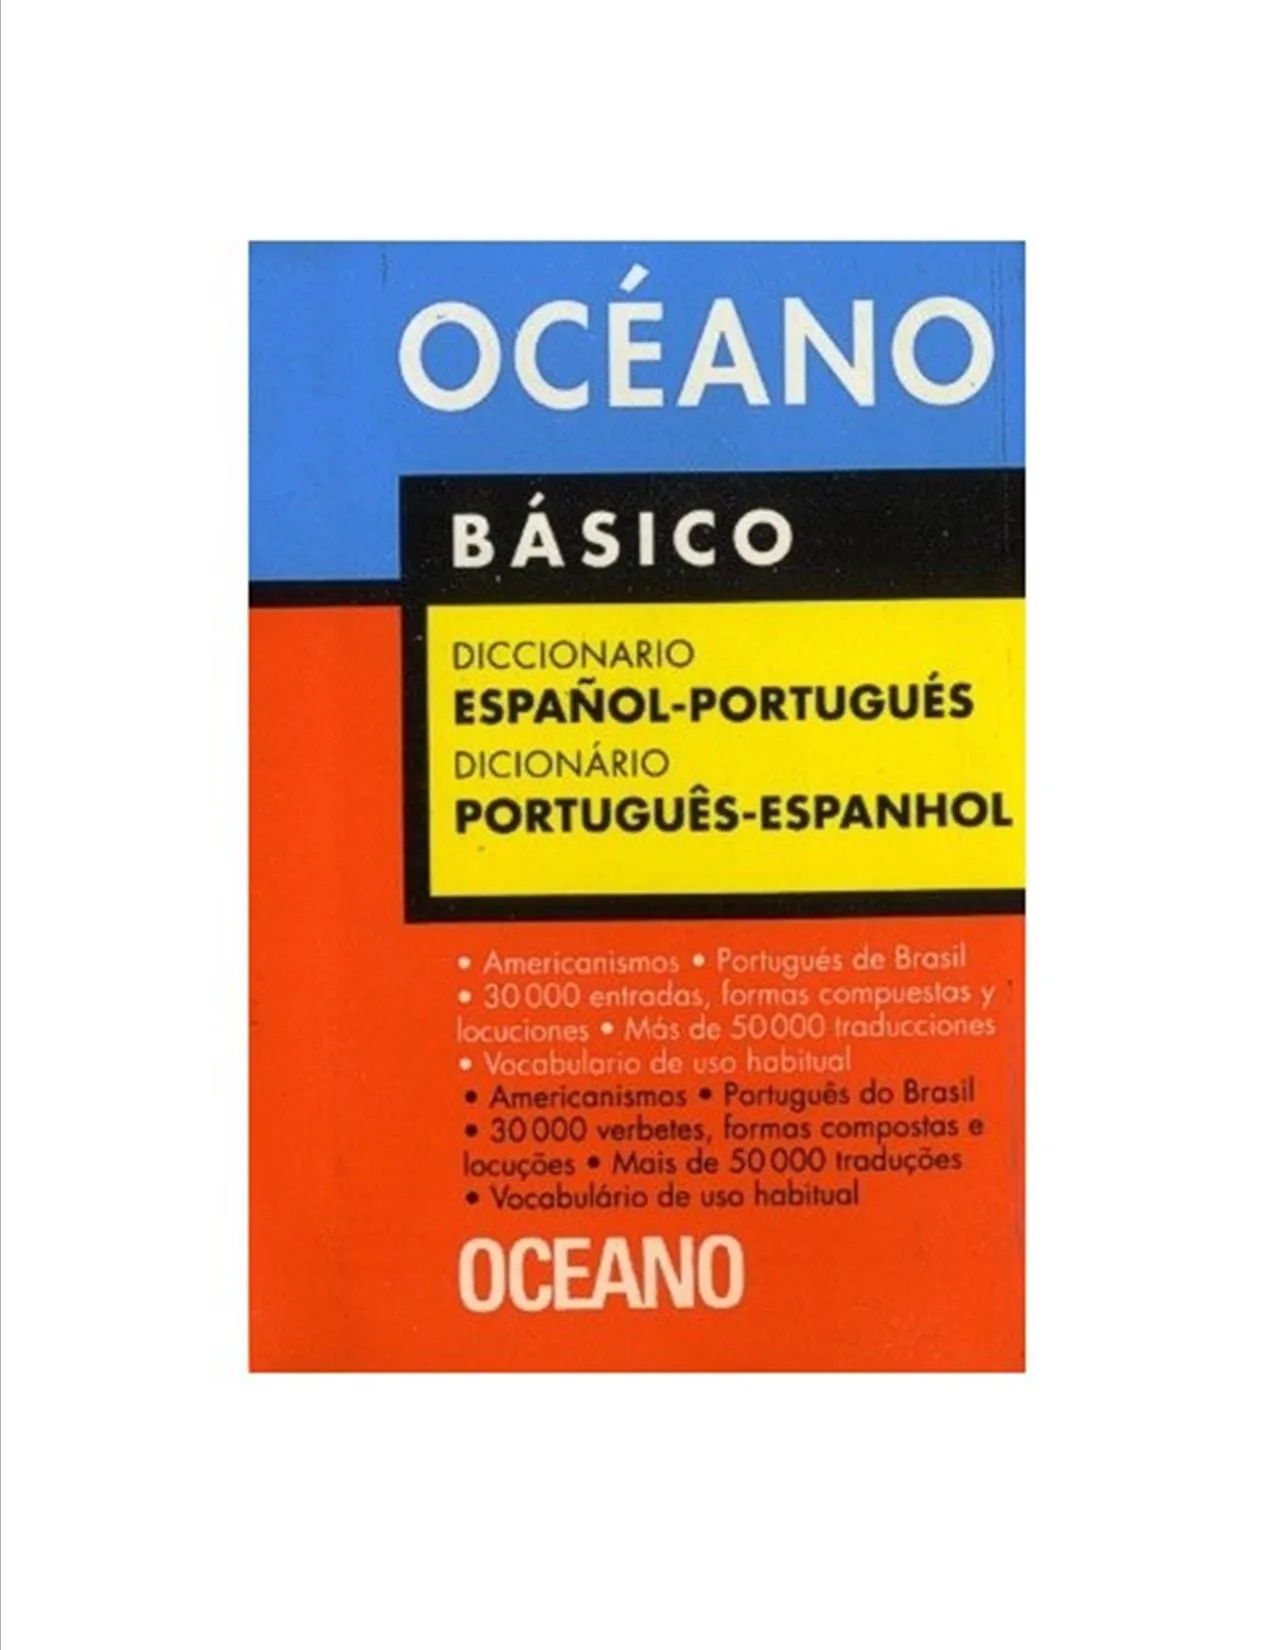 Diccionario Oceano Basico Español-portugues